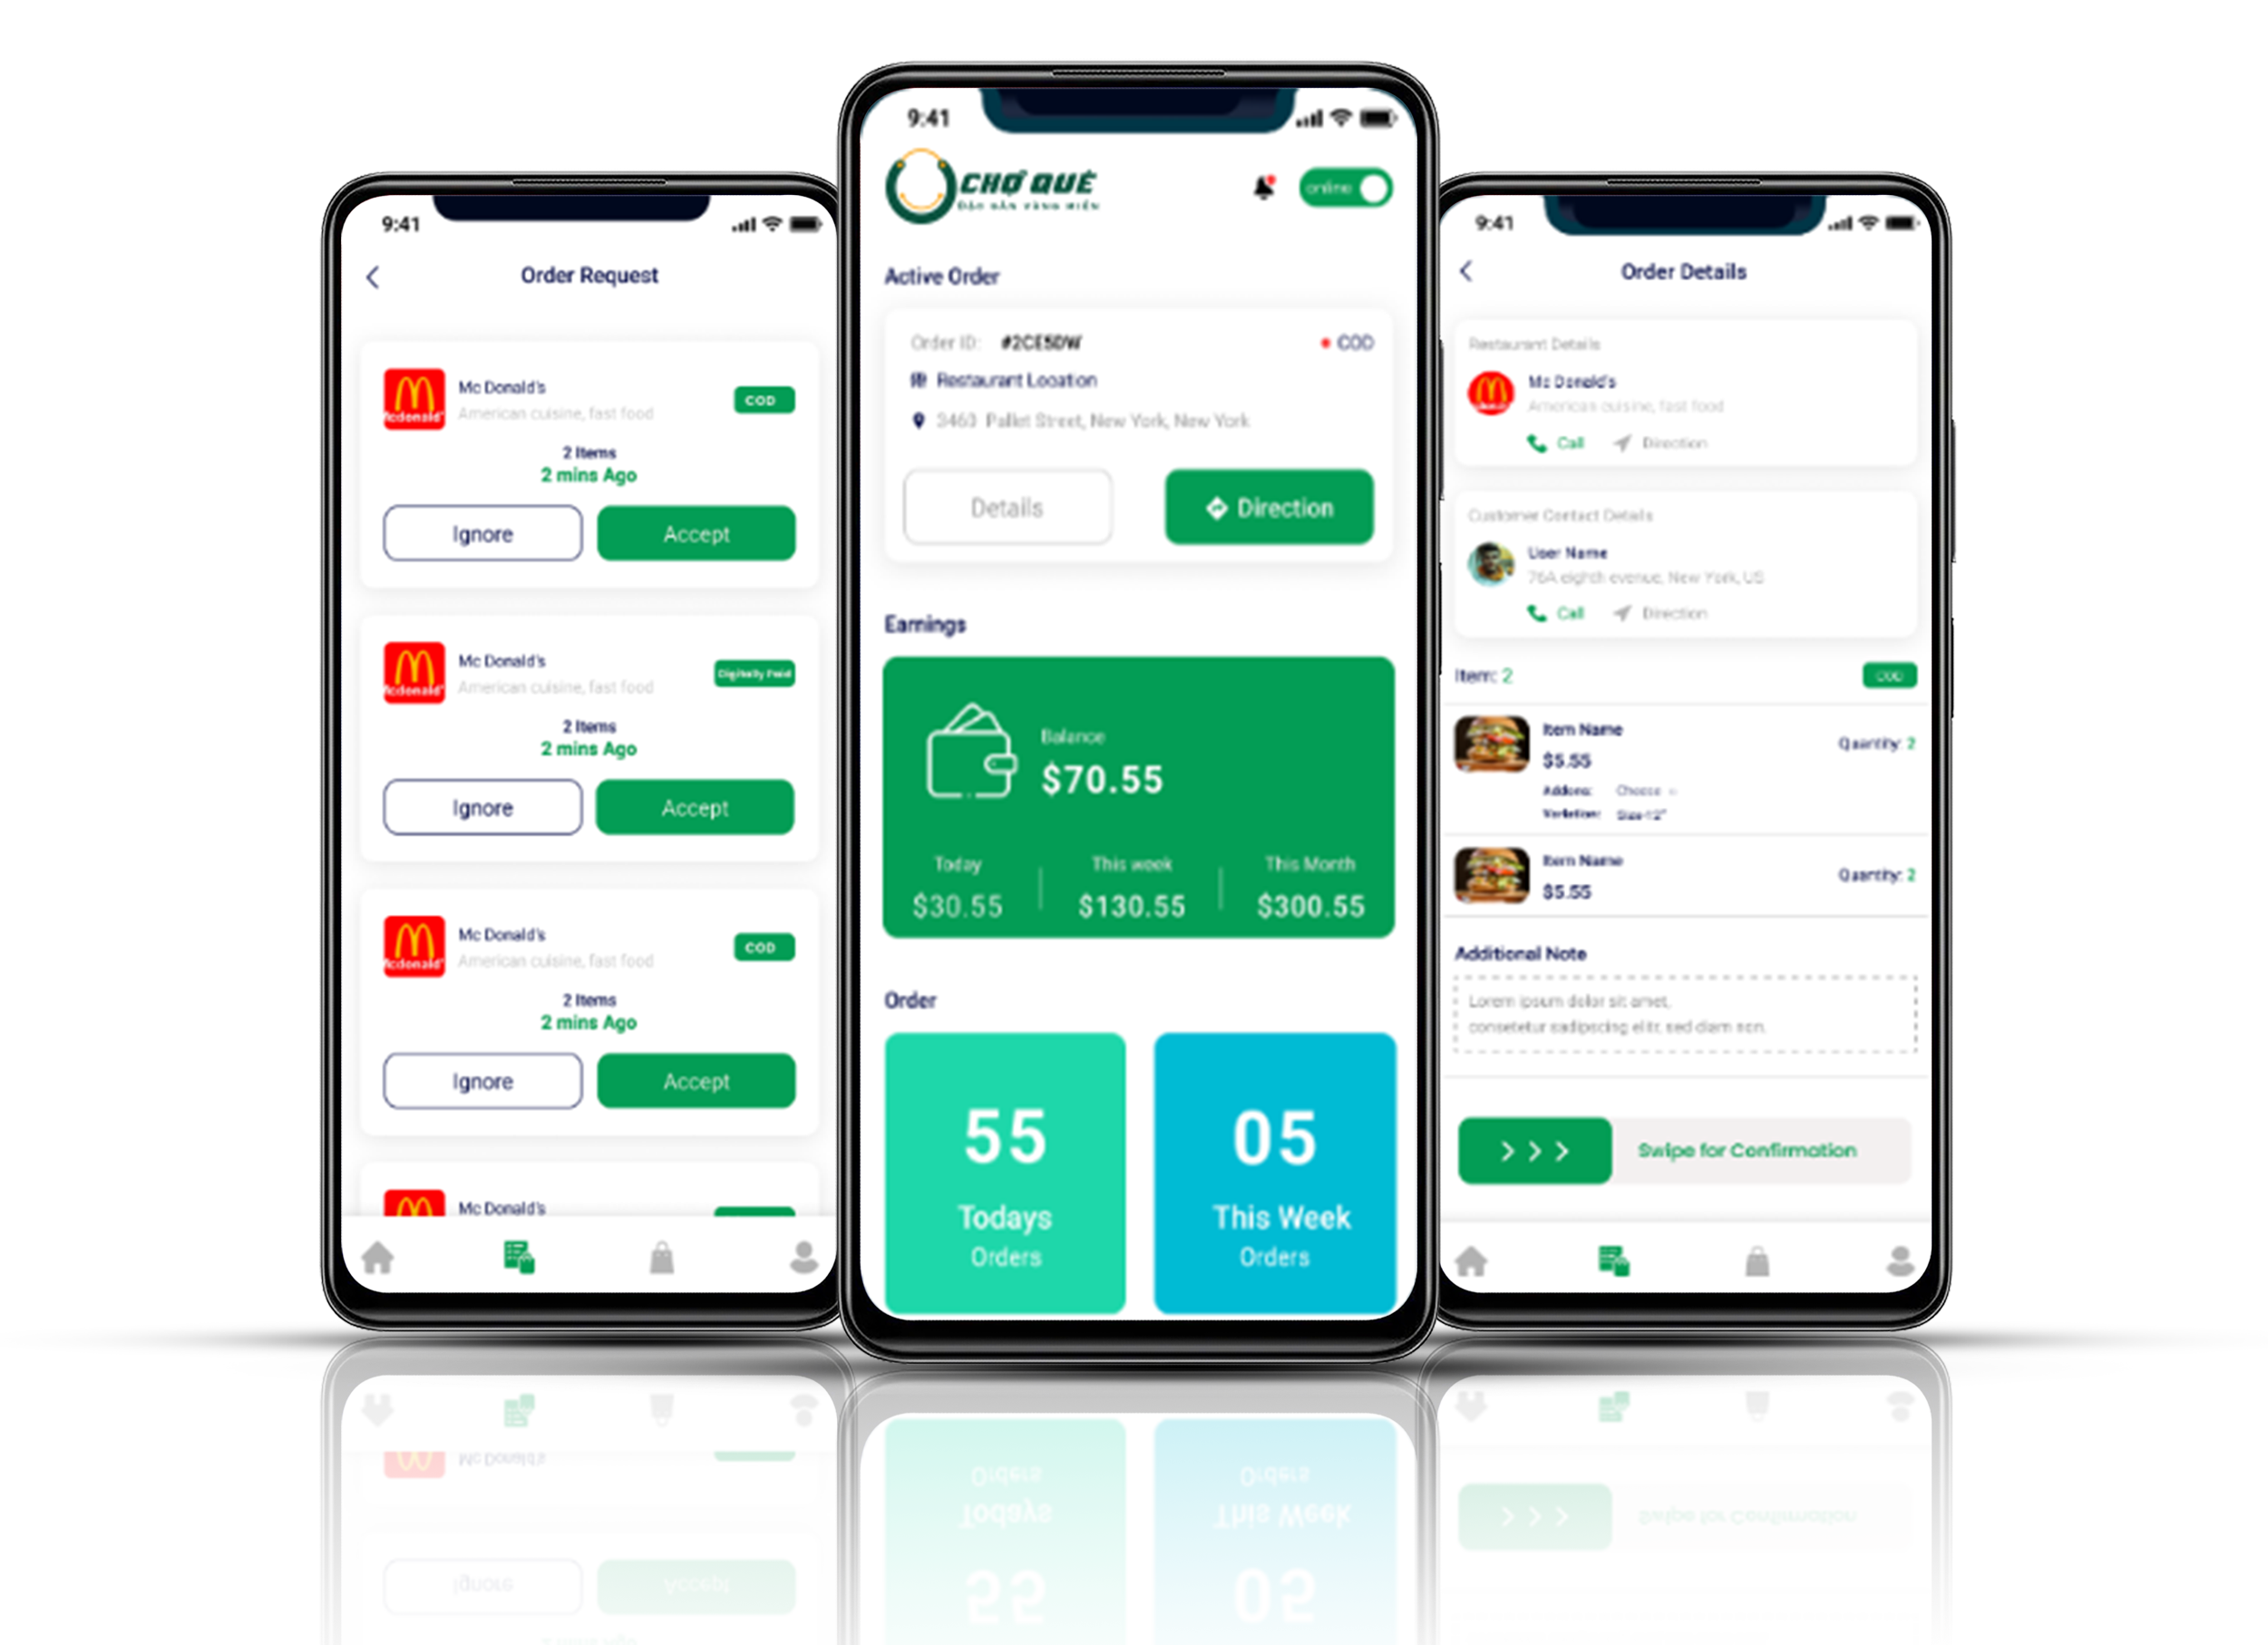 Mobile app cho người giao hàng - app chợ quê